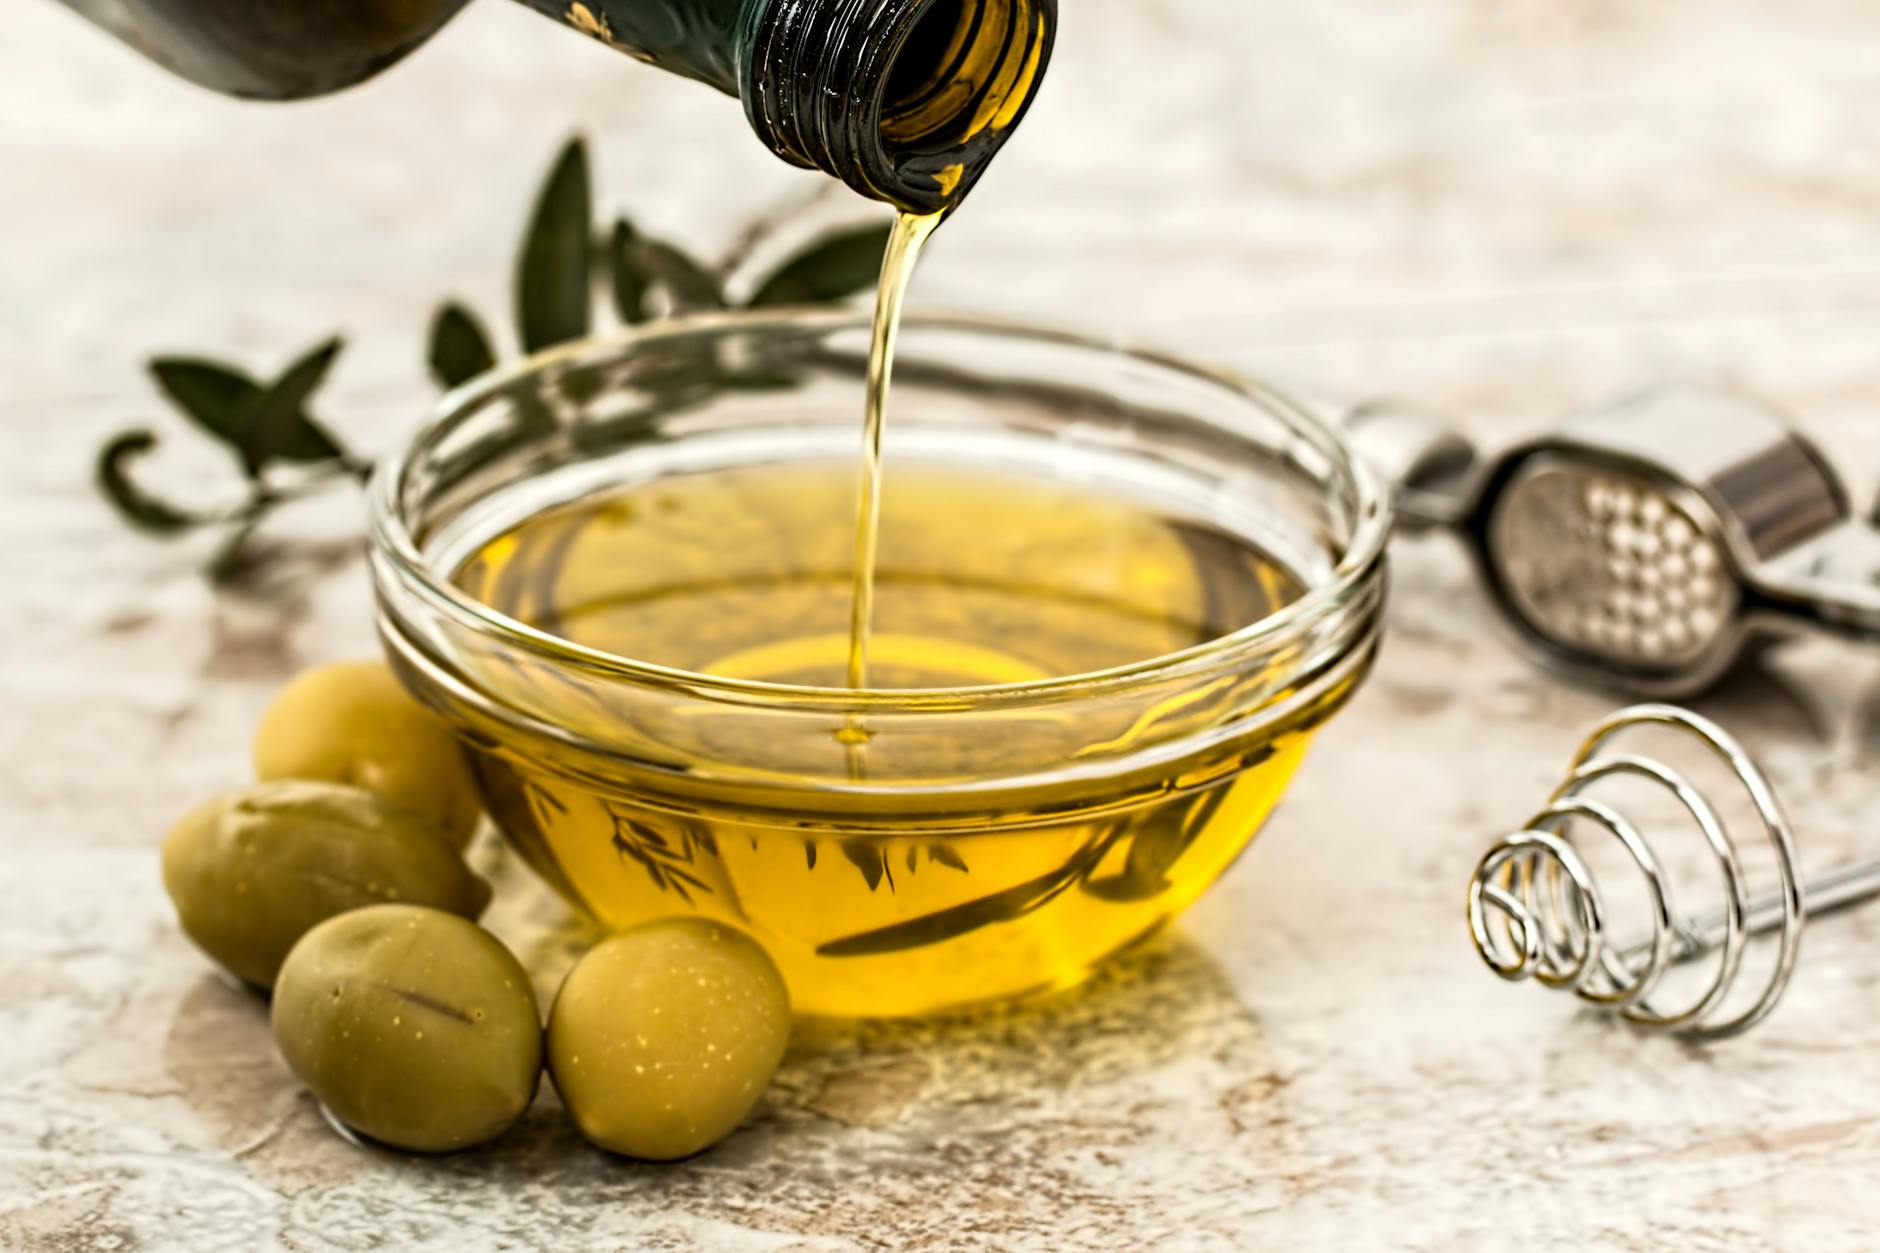 olive oil salad dressing cooking olive